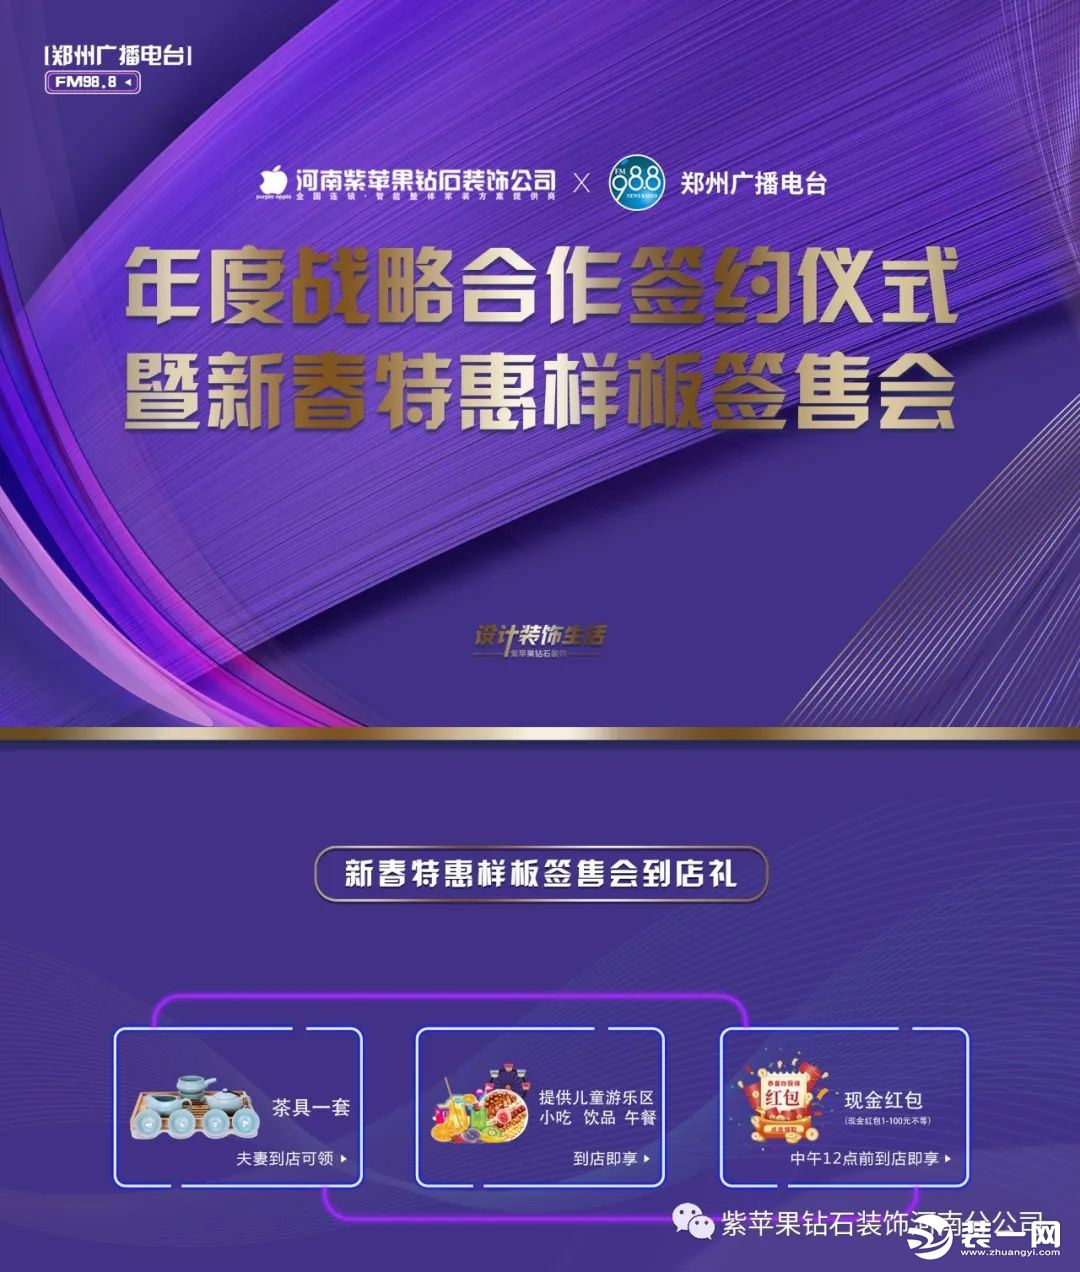 郑州紫苹果装饰公司活动图